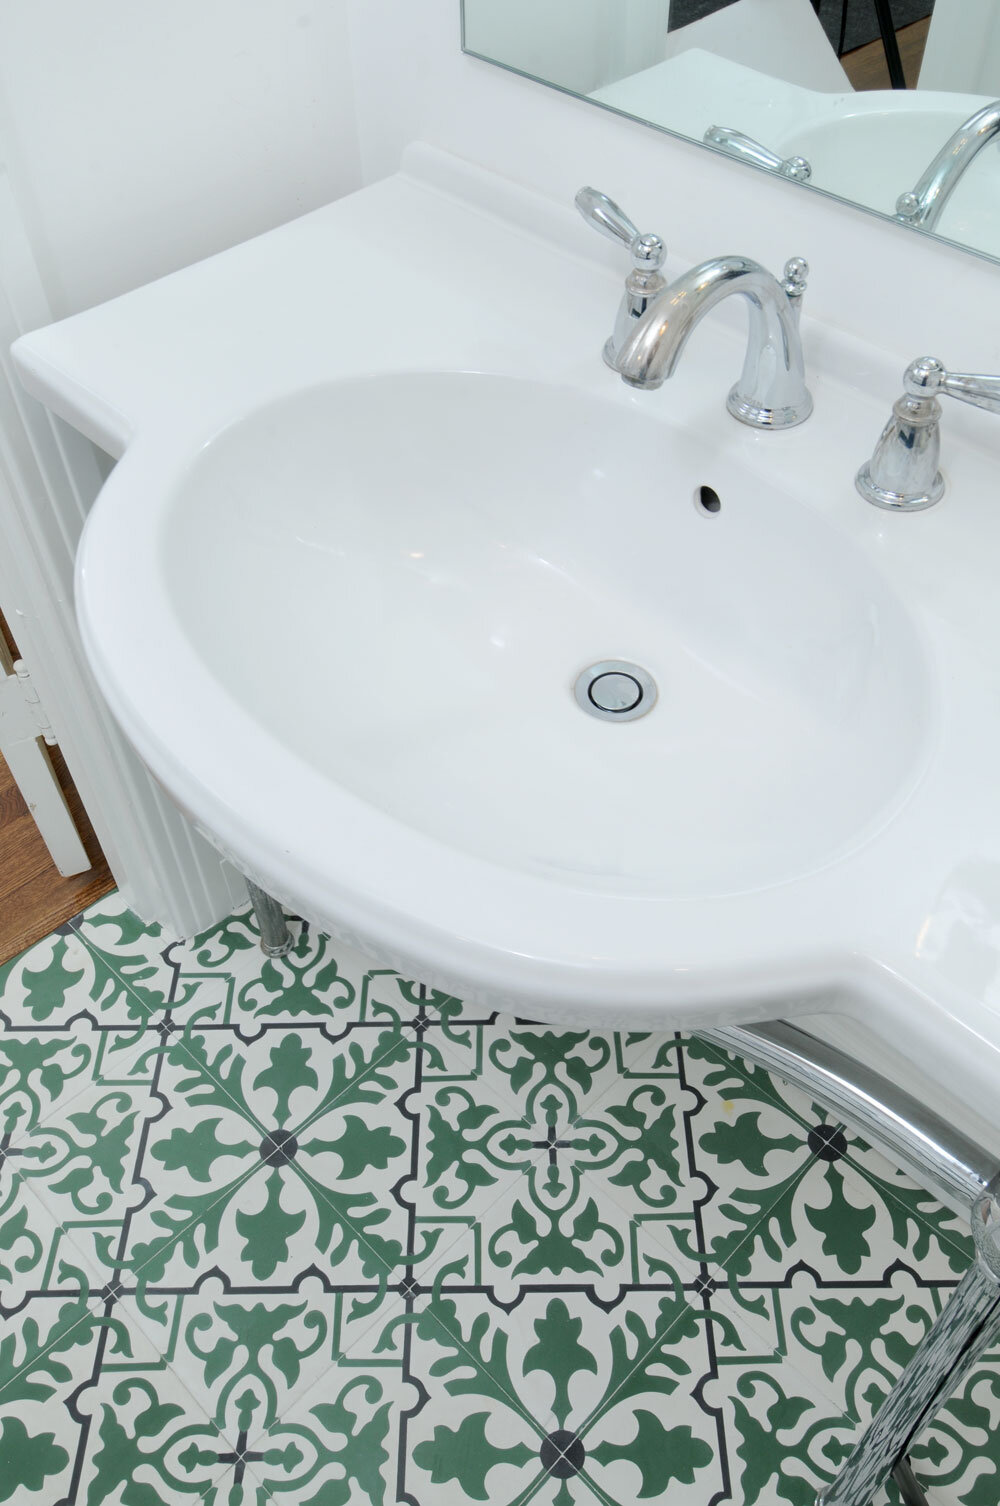 bathroom-vanity-green-pattern-tile-waterford-construction.jpg